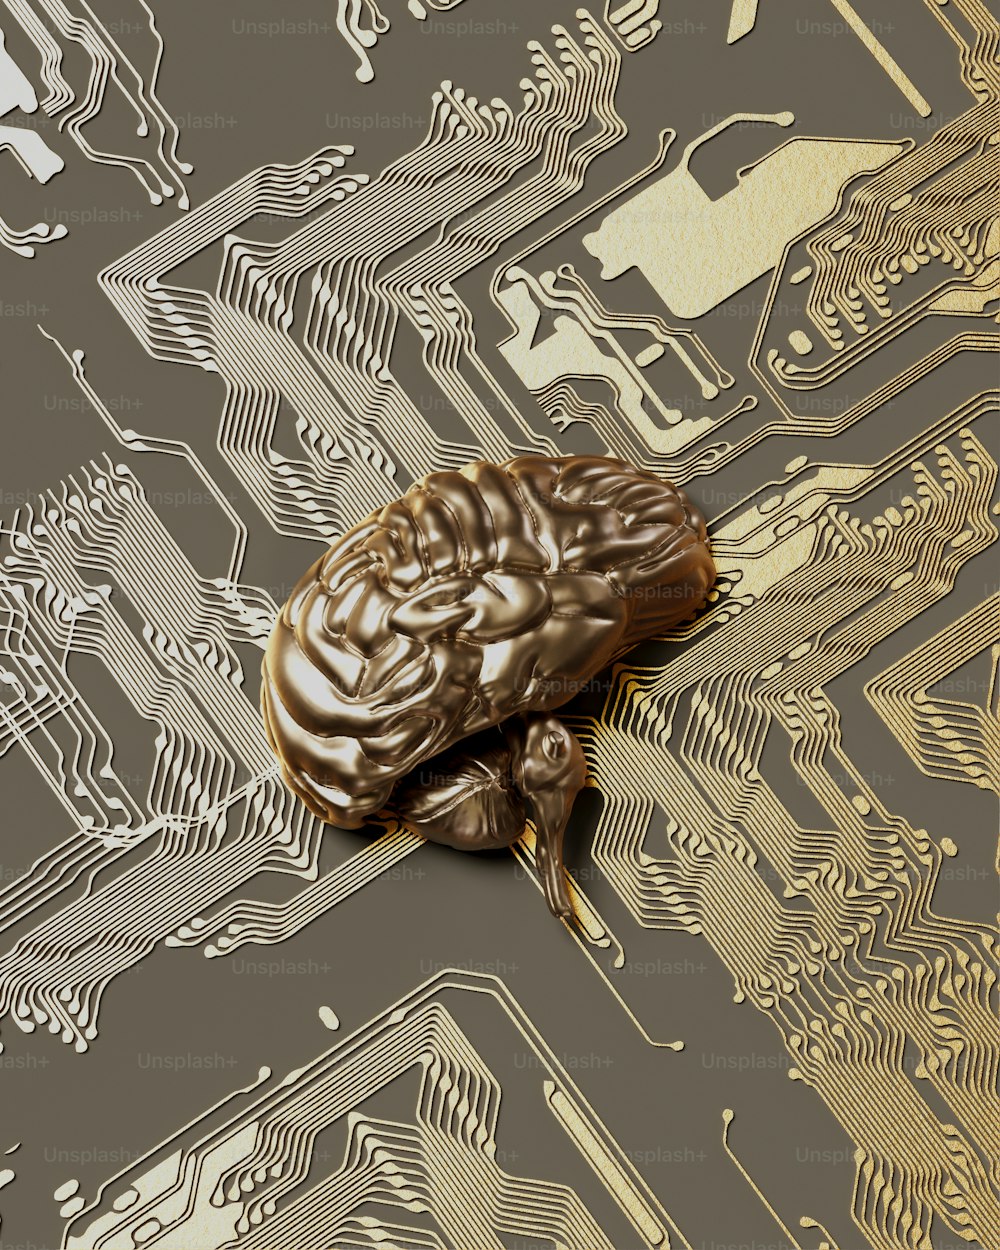 Ein goldenes Gehirn auf einer Computerplatine